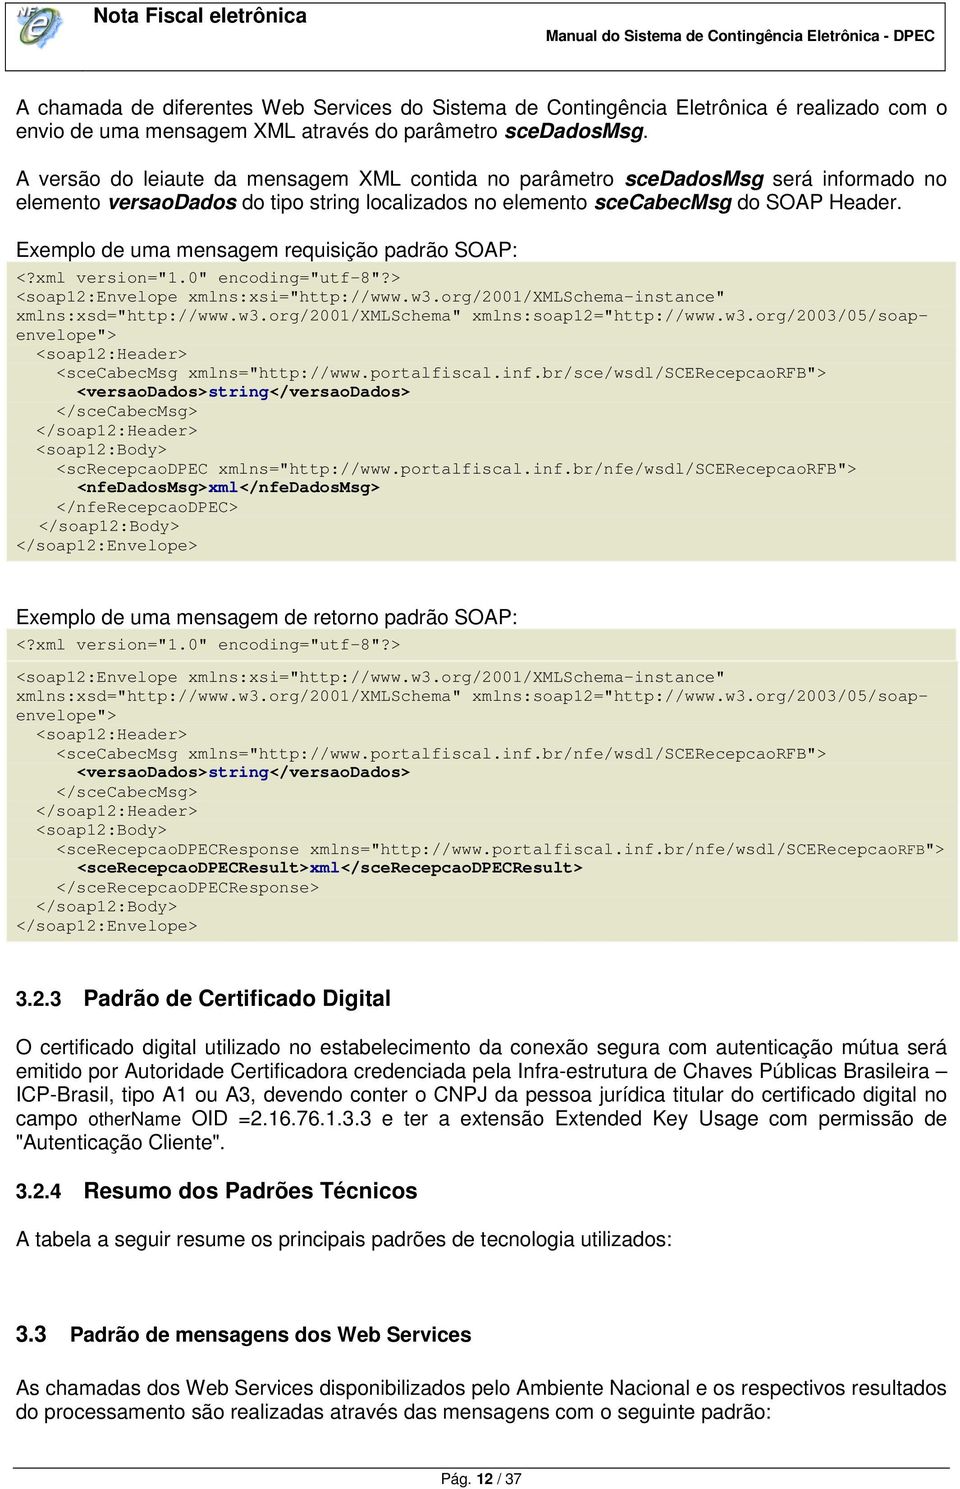 Exemplo de uma mensagem requisição padrão SOAP: <?xml version="1.0" encoding="utf-8"?> <soap12:envelope xmlns:xsi="http://www.w3.org/2001/xmlschema-instance" xmlns:xsd="http://www.w3.org/2001/xmlschema" xmlns:soap12="http://www.